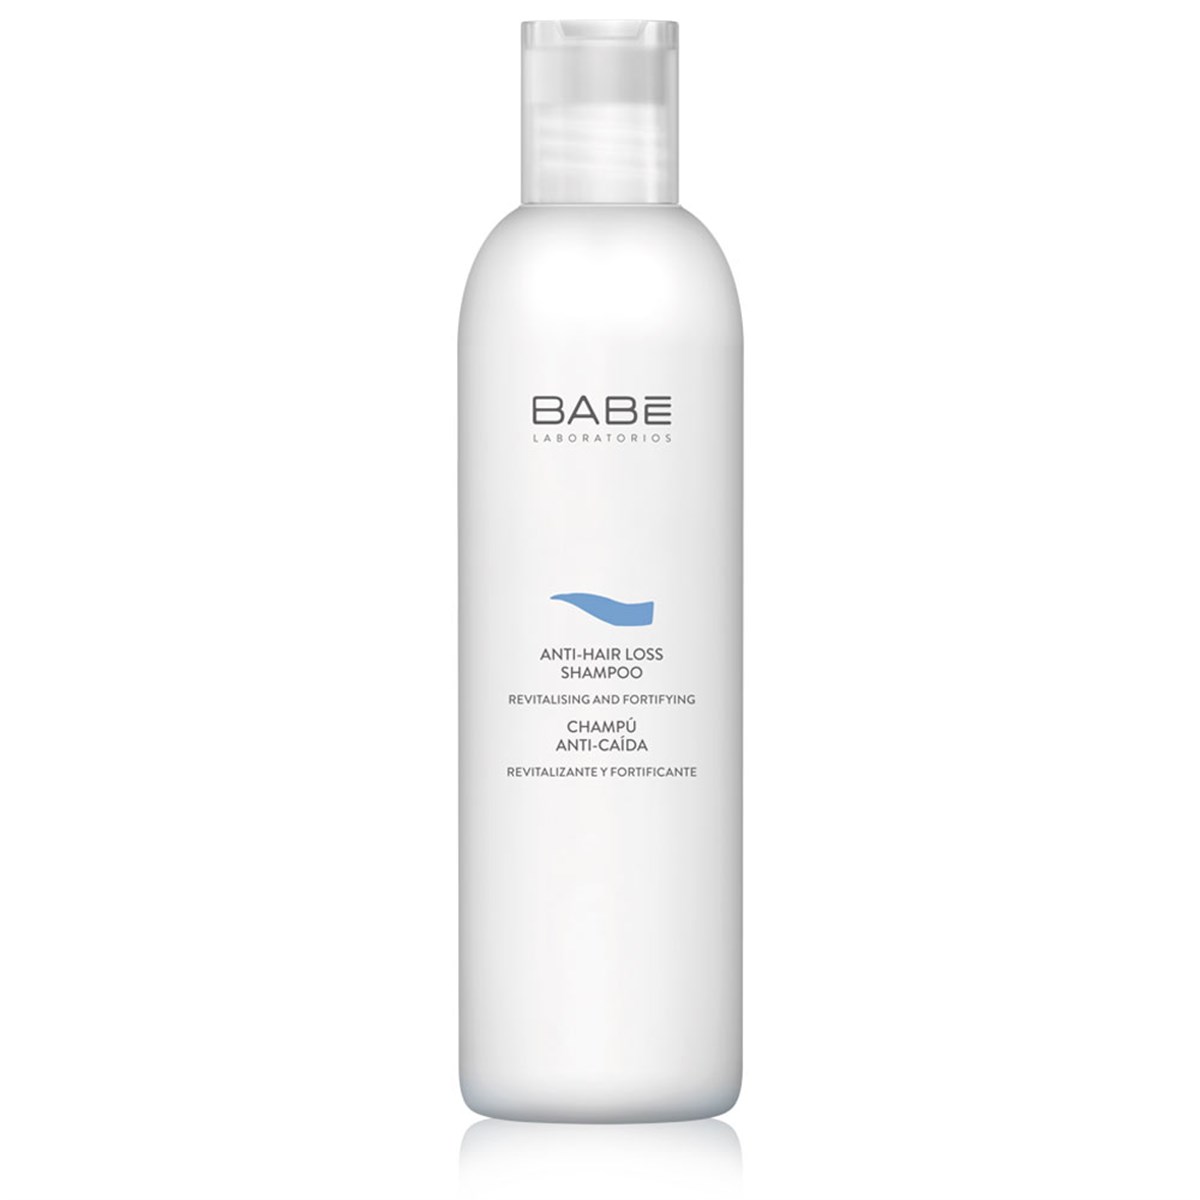 Babe Saç Dökülmesini Önleyici Şampuan 250ml Fiyatları | Dermosiparis.com